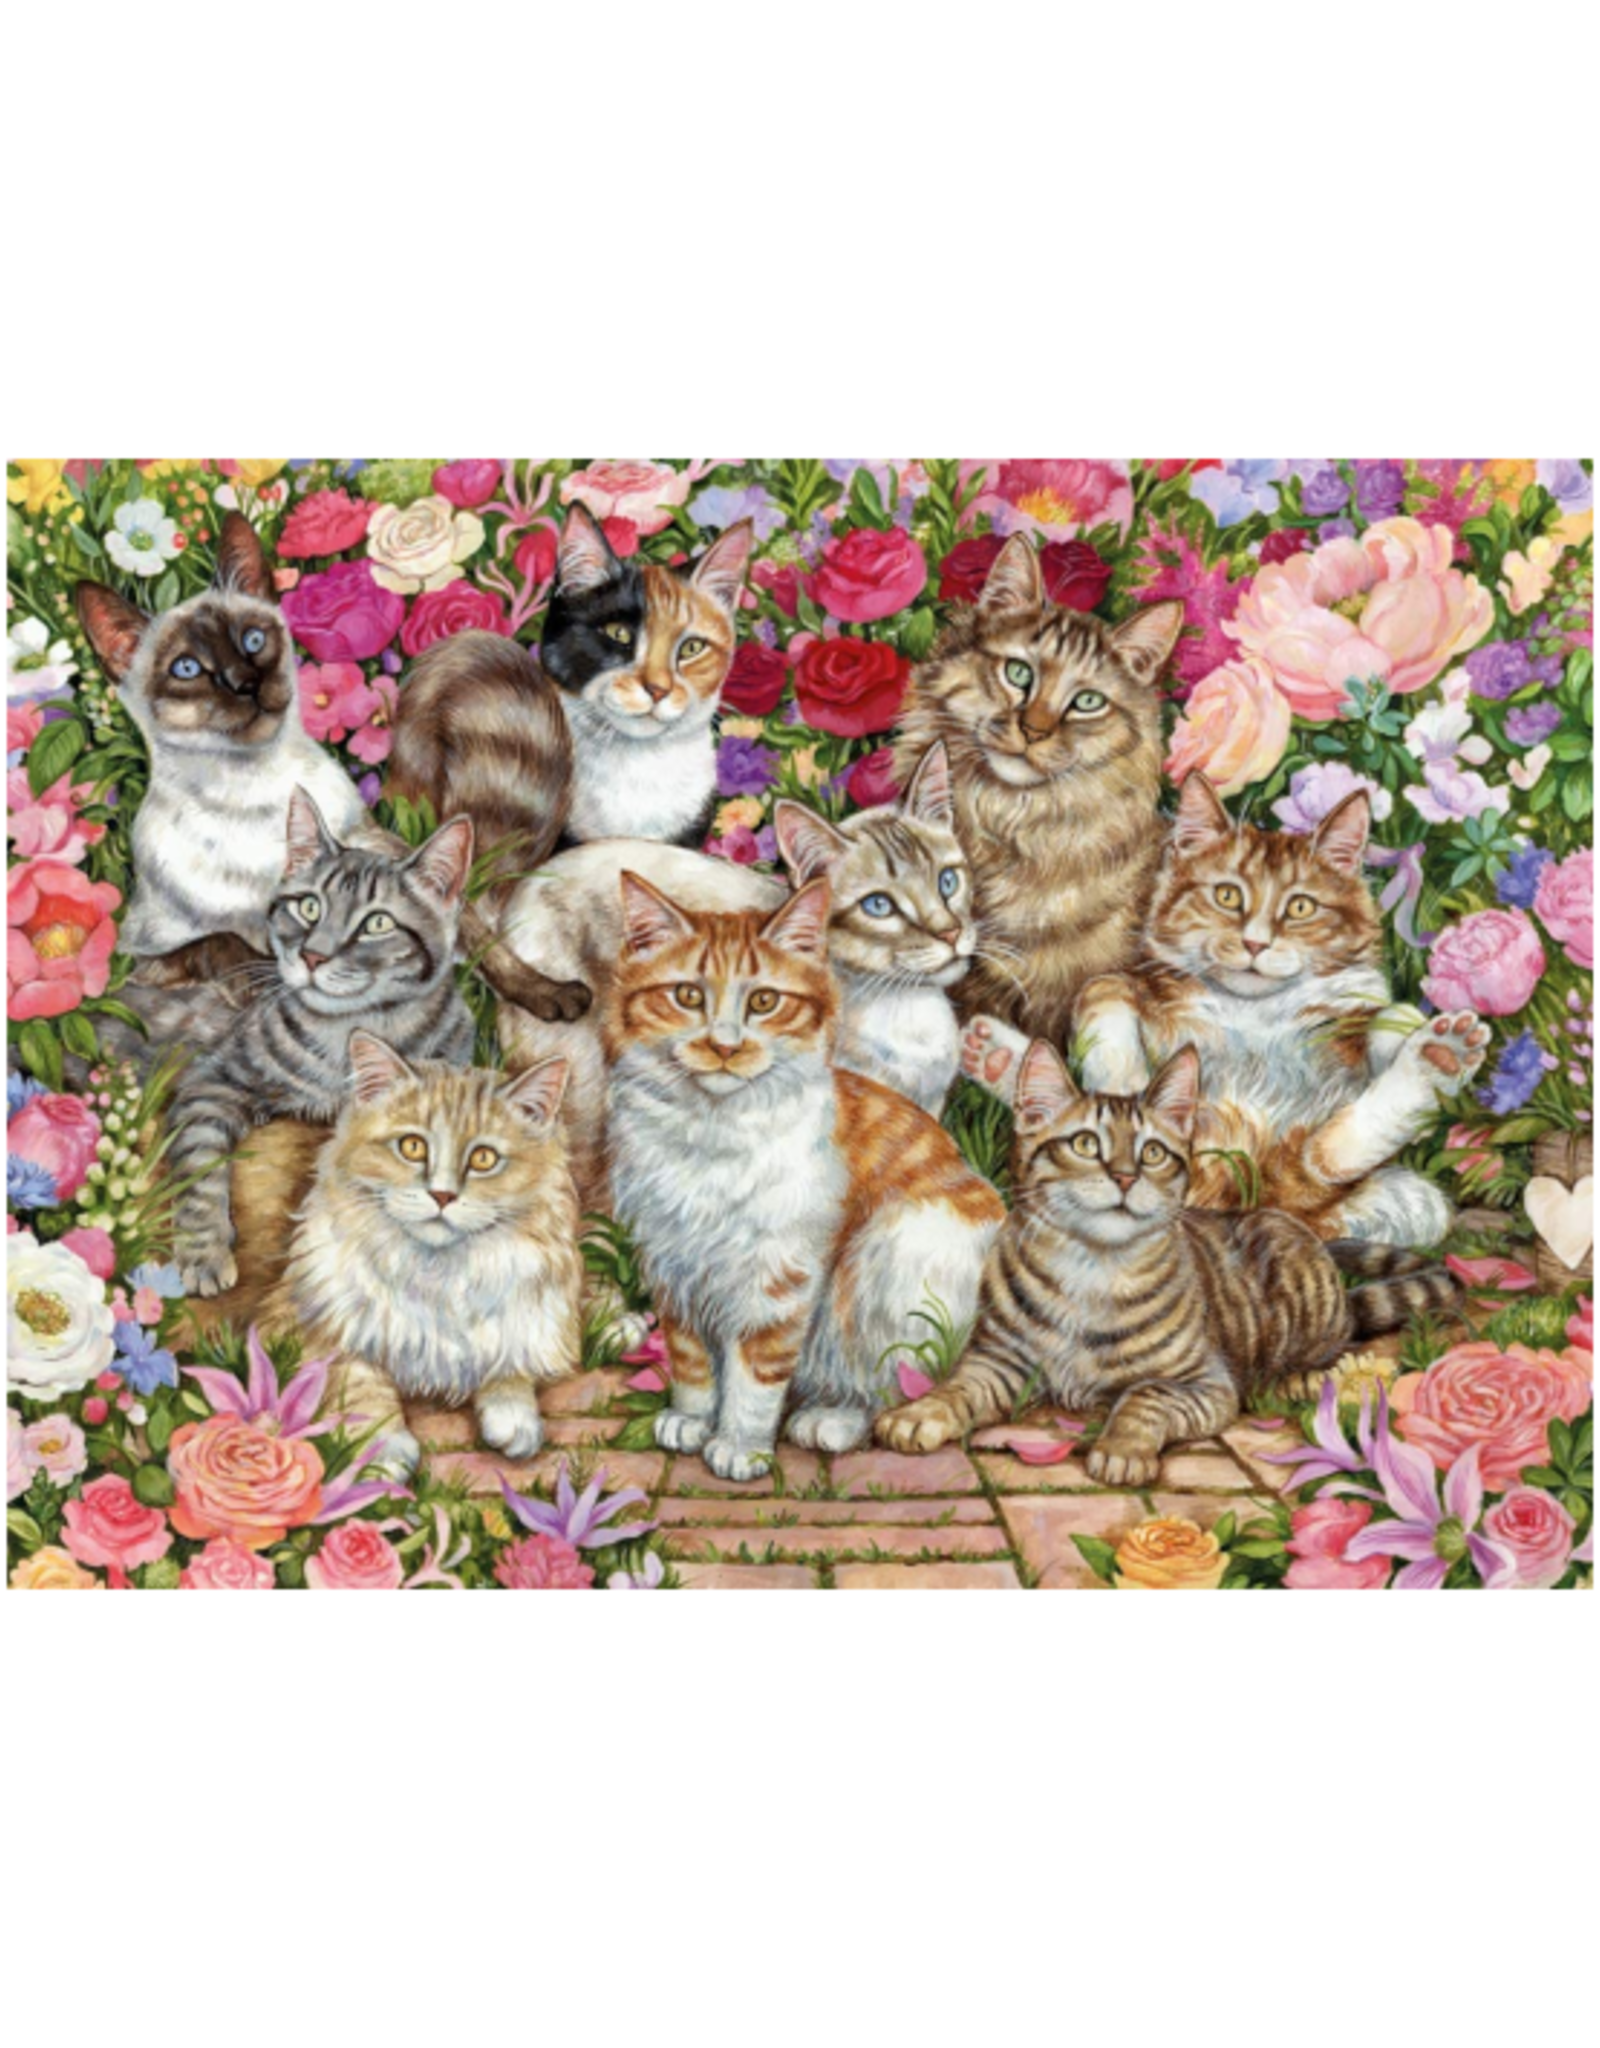 Falcon De Luxe - 1000pcs - Floral Cats